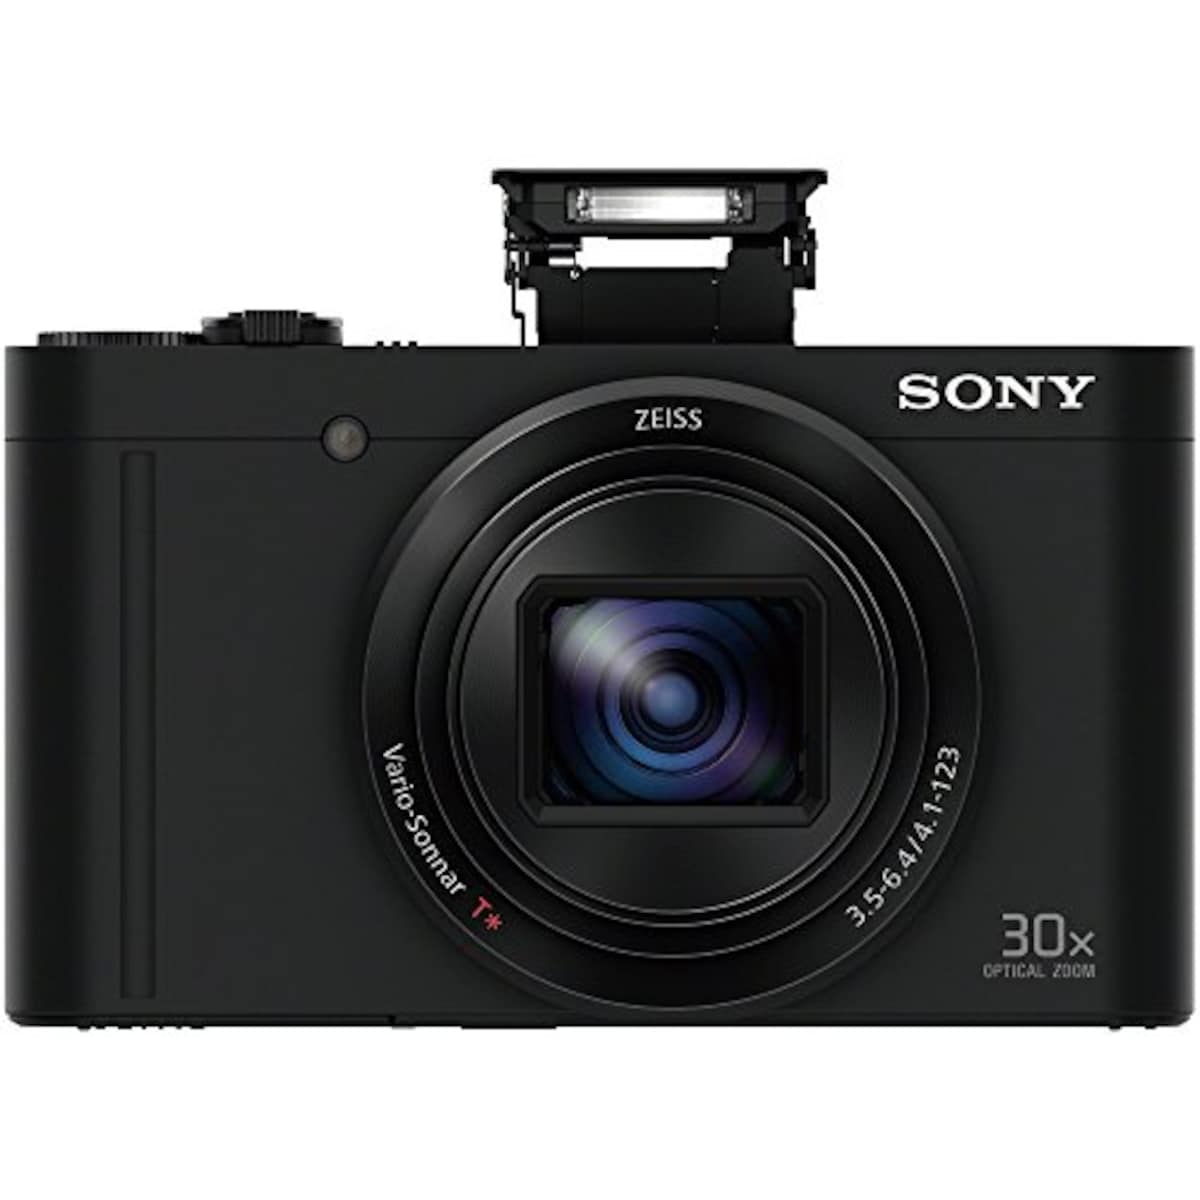  【WX500 と ジャケットケース セット】 大切なカメラをキズや汚れからガードしたい方に。DSC-WX500 ブラック + LCJ-HWA画像12 